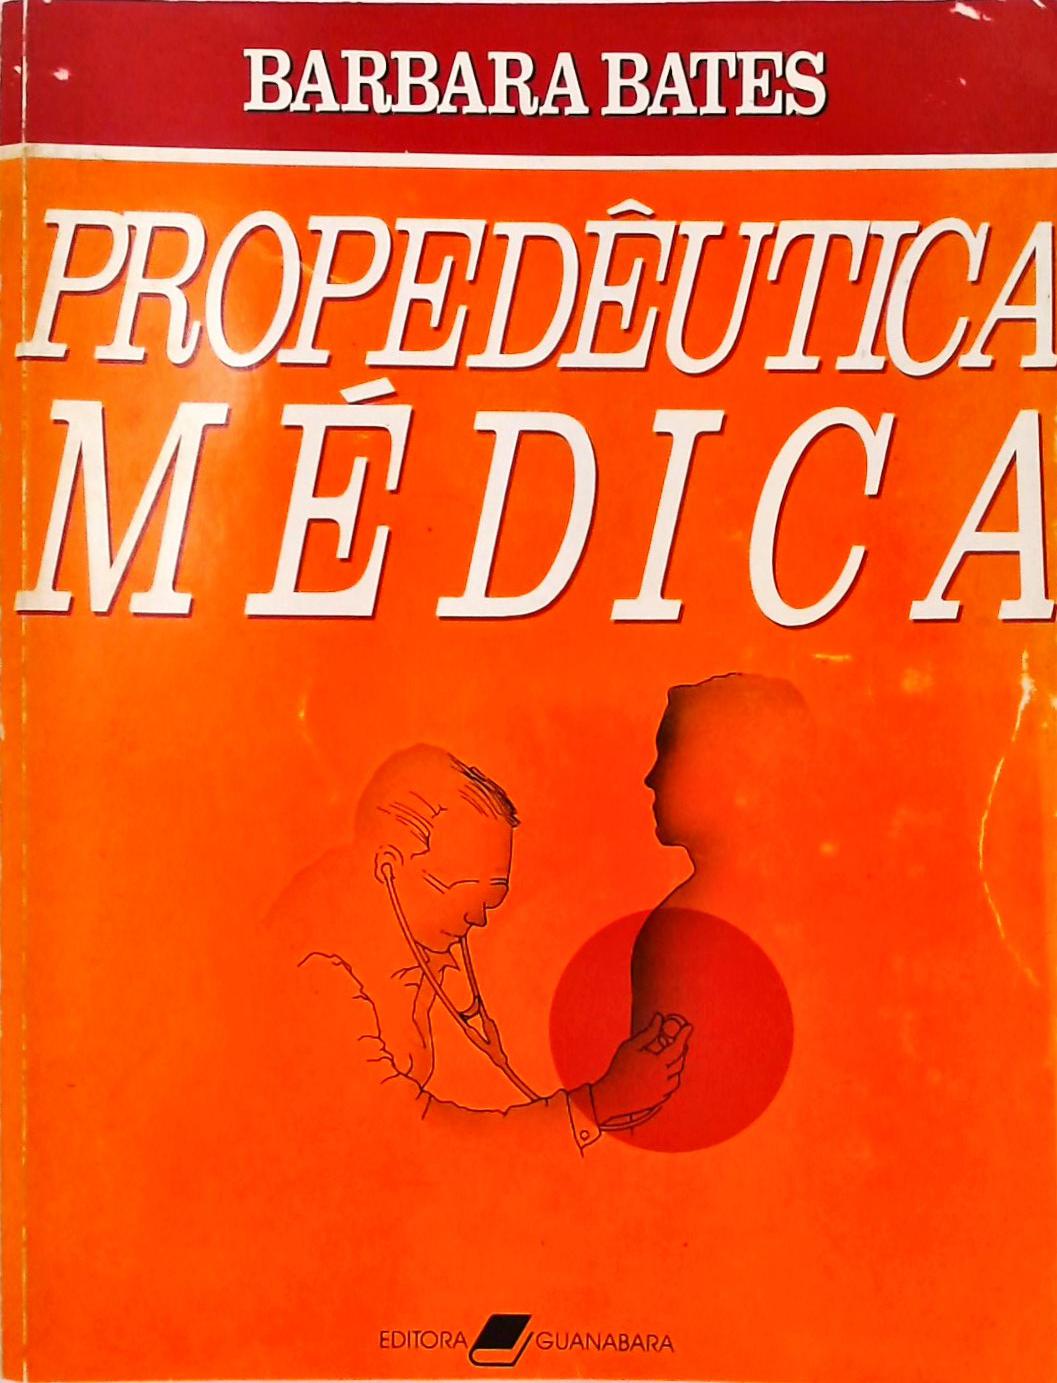 Propedêutica Médica